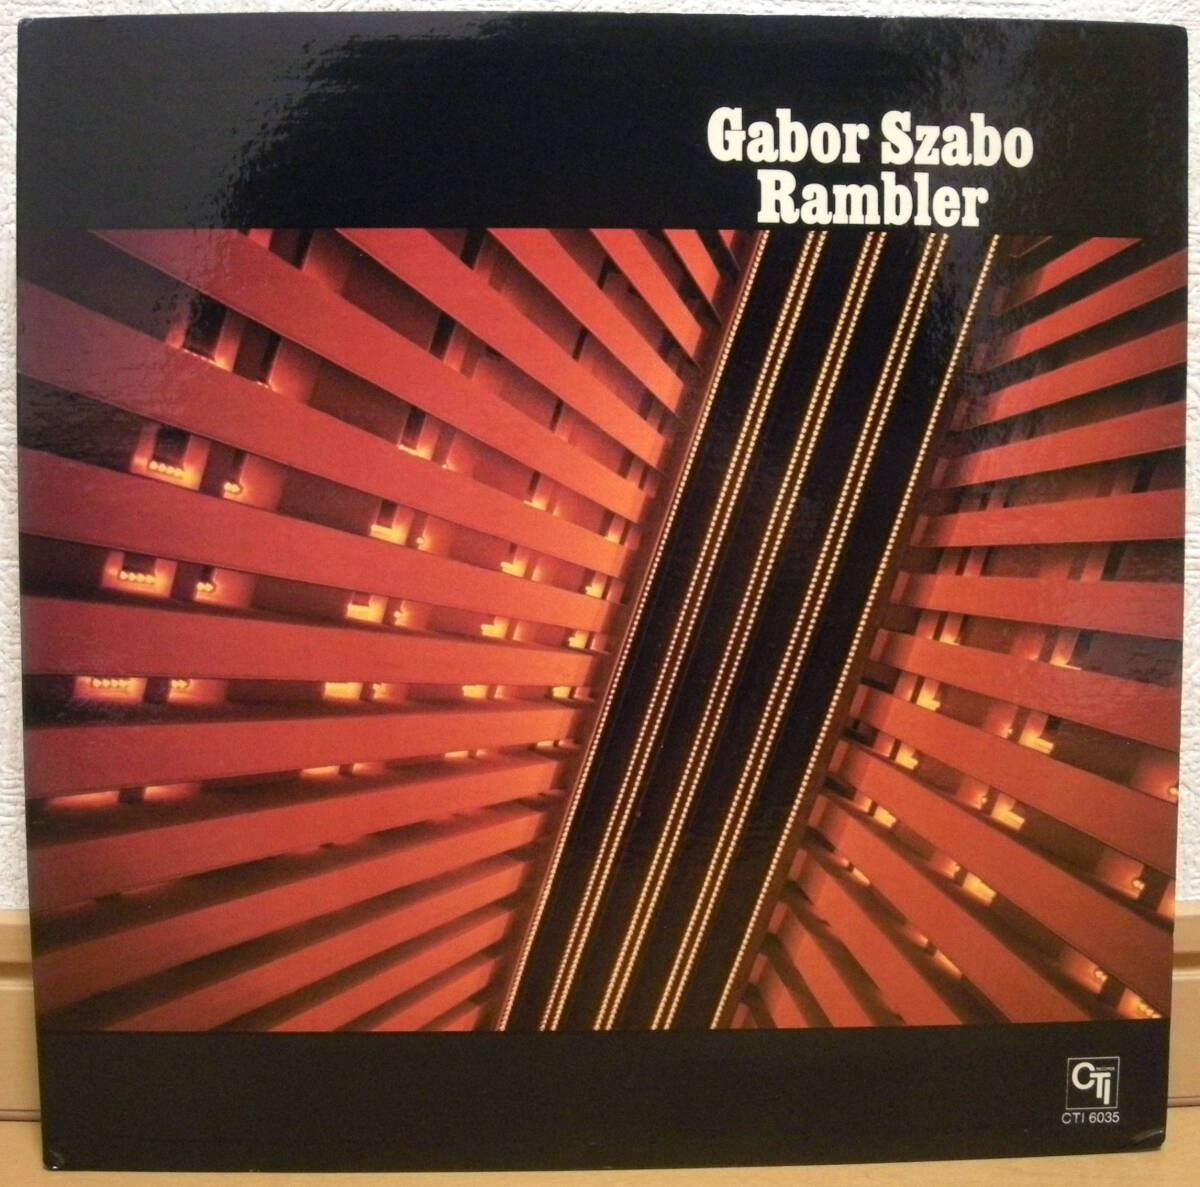 ガボール・ザボ【1974年 US盤 ORIG LP】GABOR SZABO Rambler | CTI Records CTI 6035 (VAN GELDER刻印 / オリジナル / ジャズギター_画像1